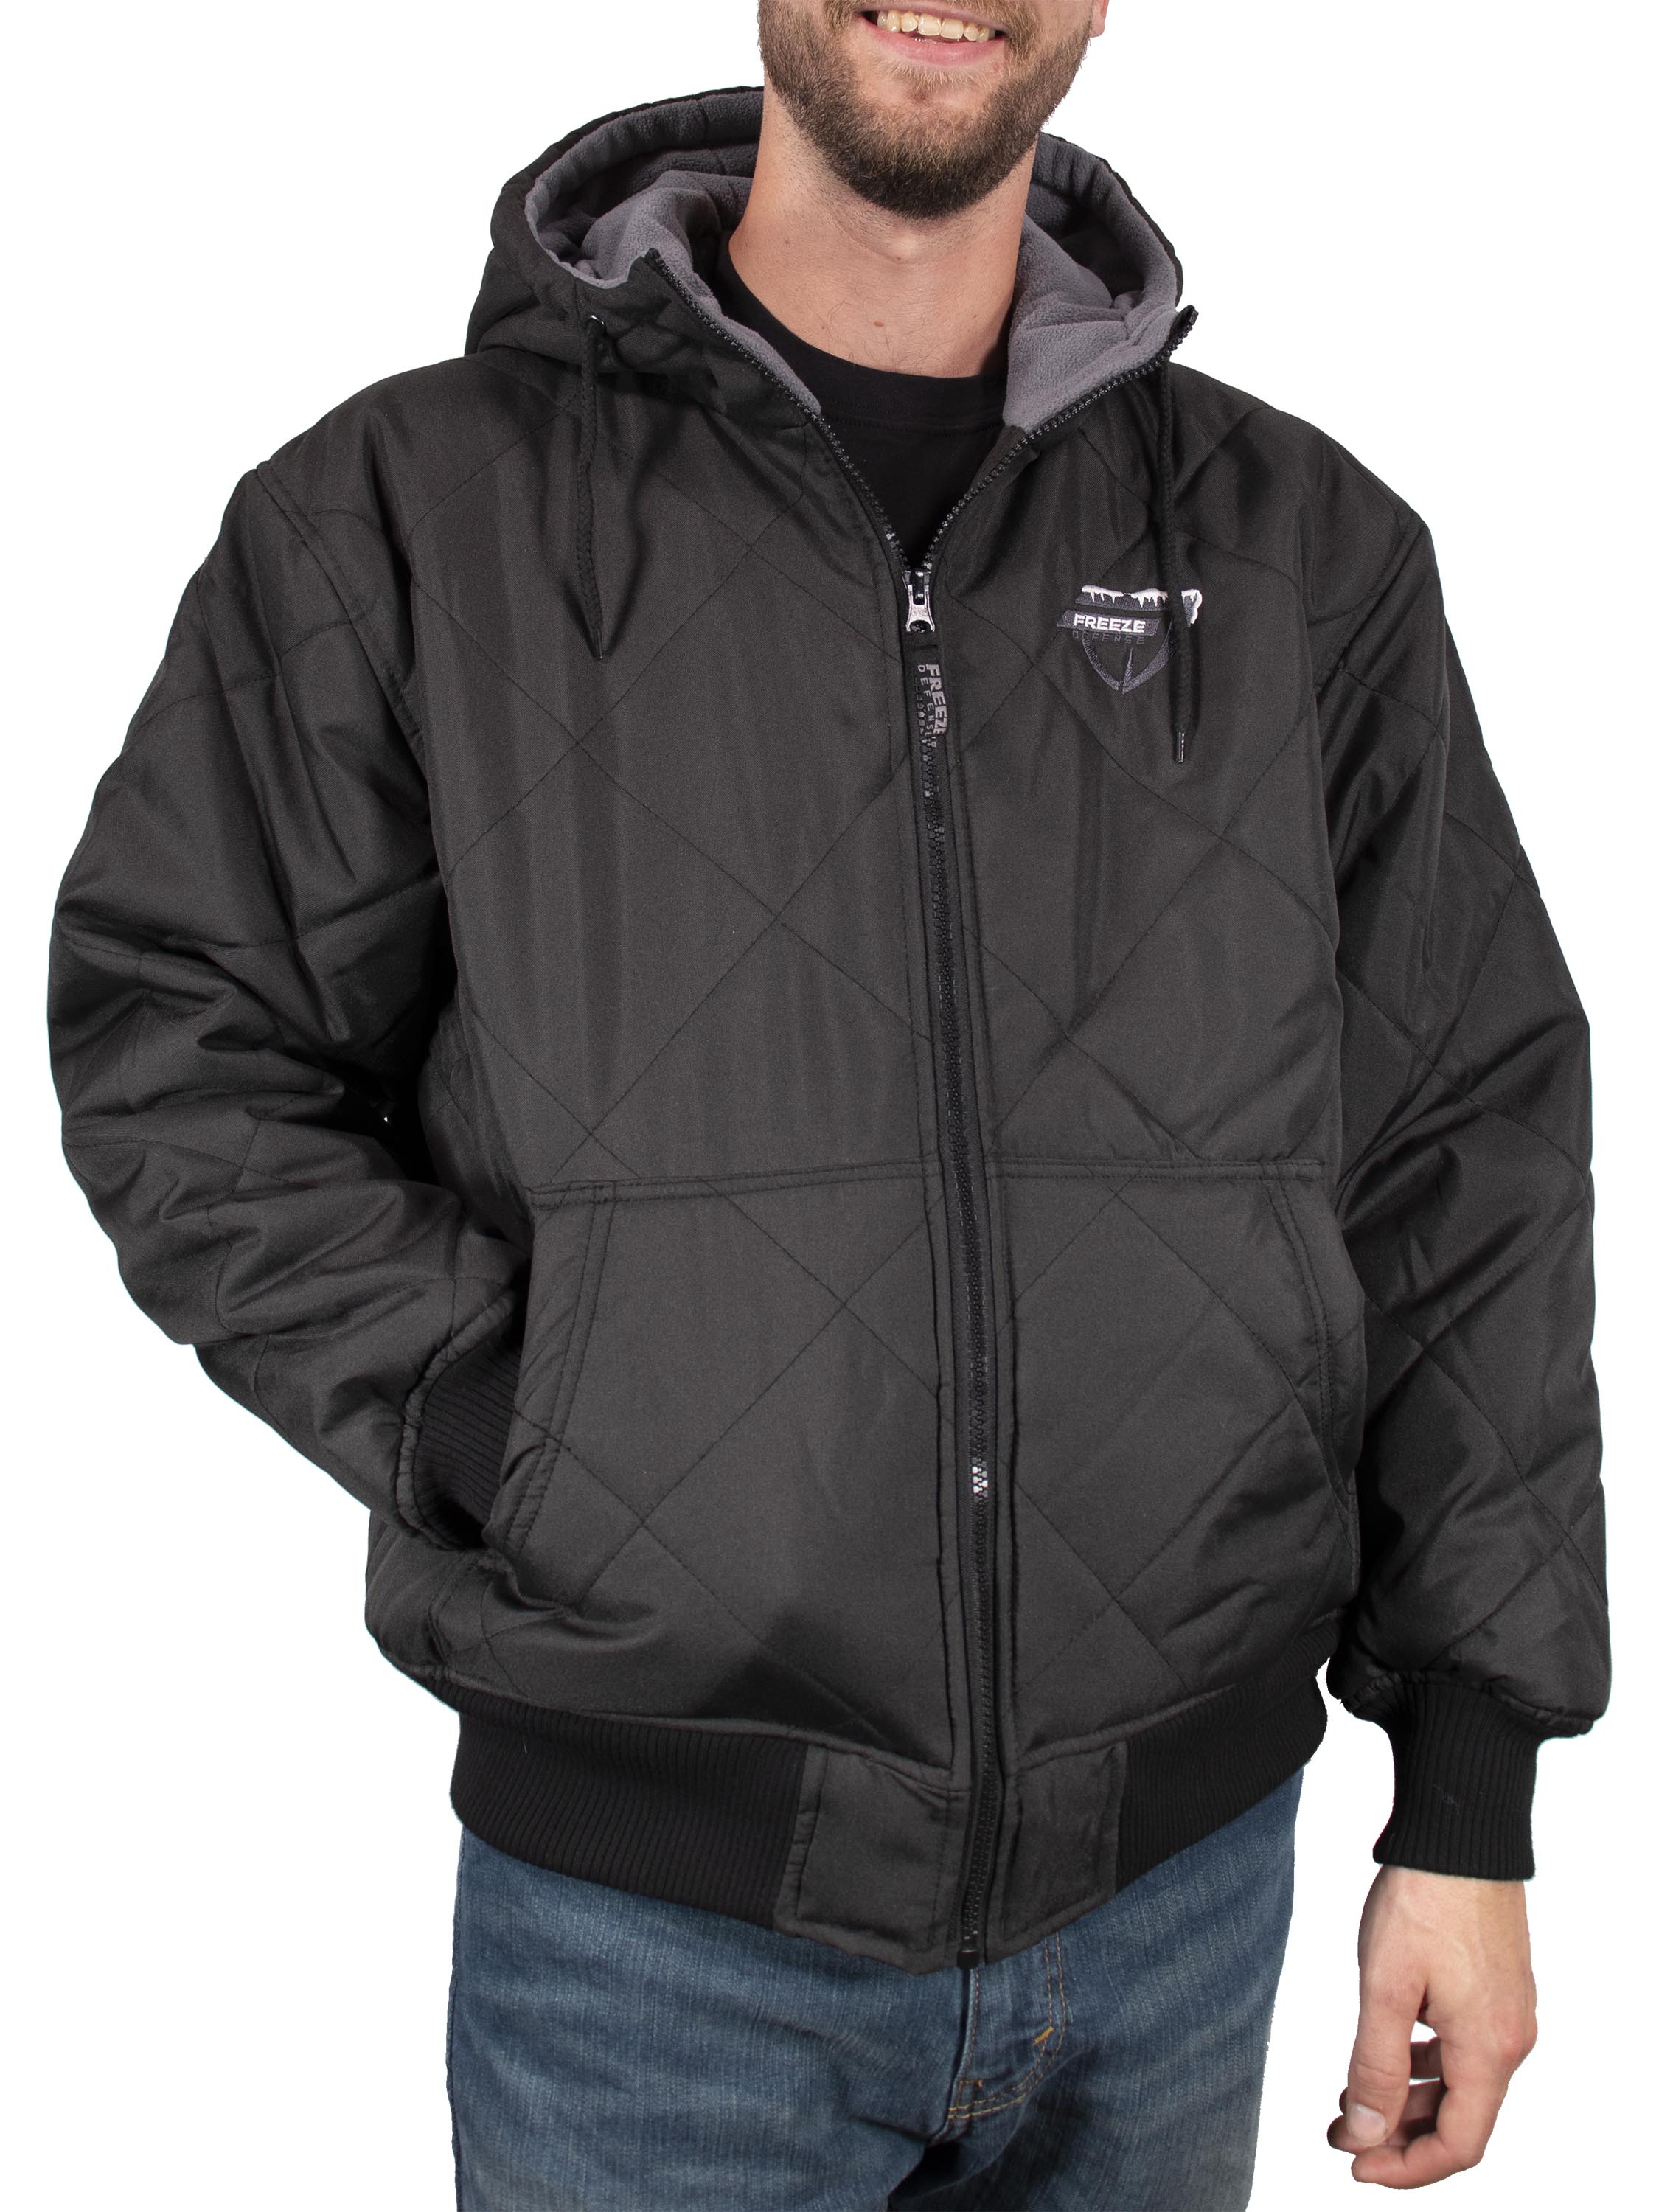 Men's Fleece-Lined All-Weather Zip-Up Jacket